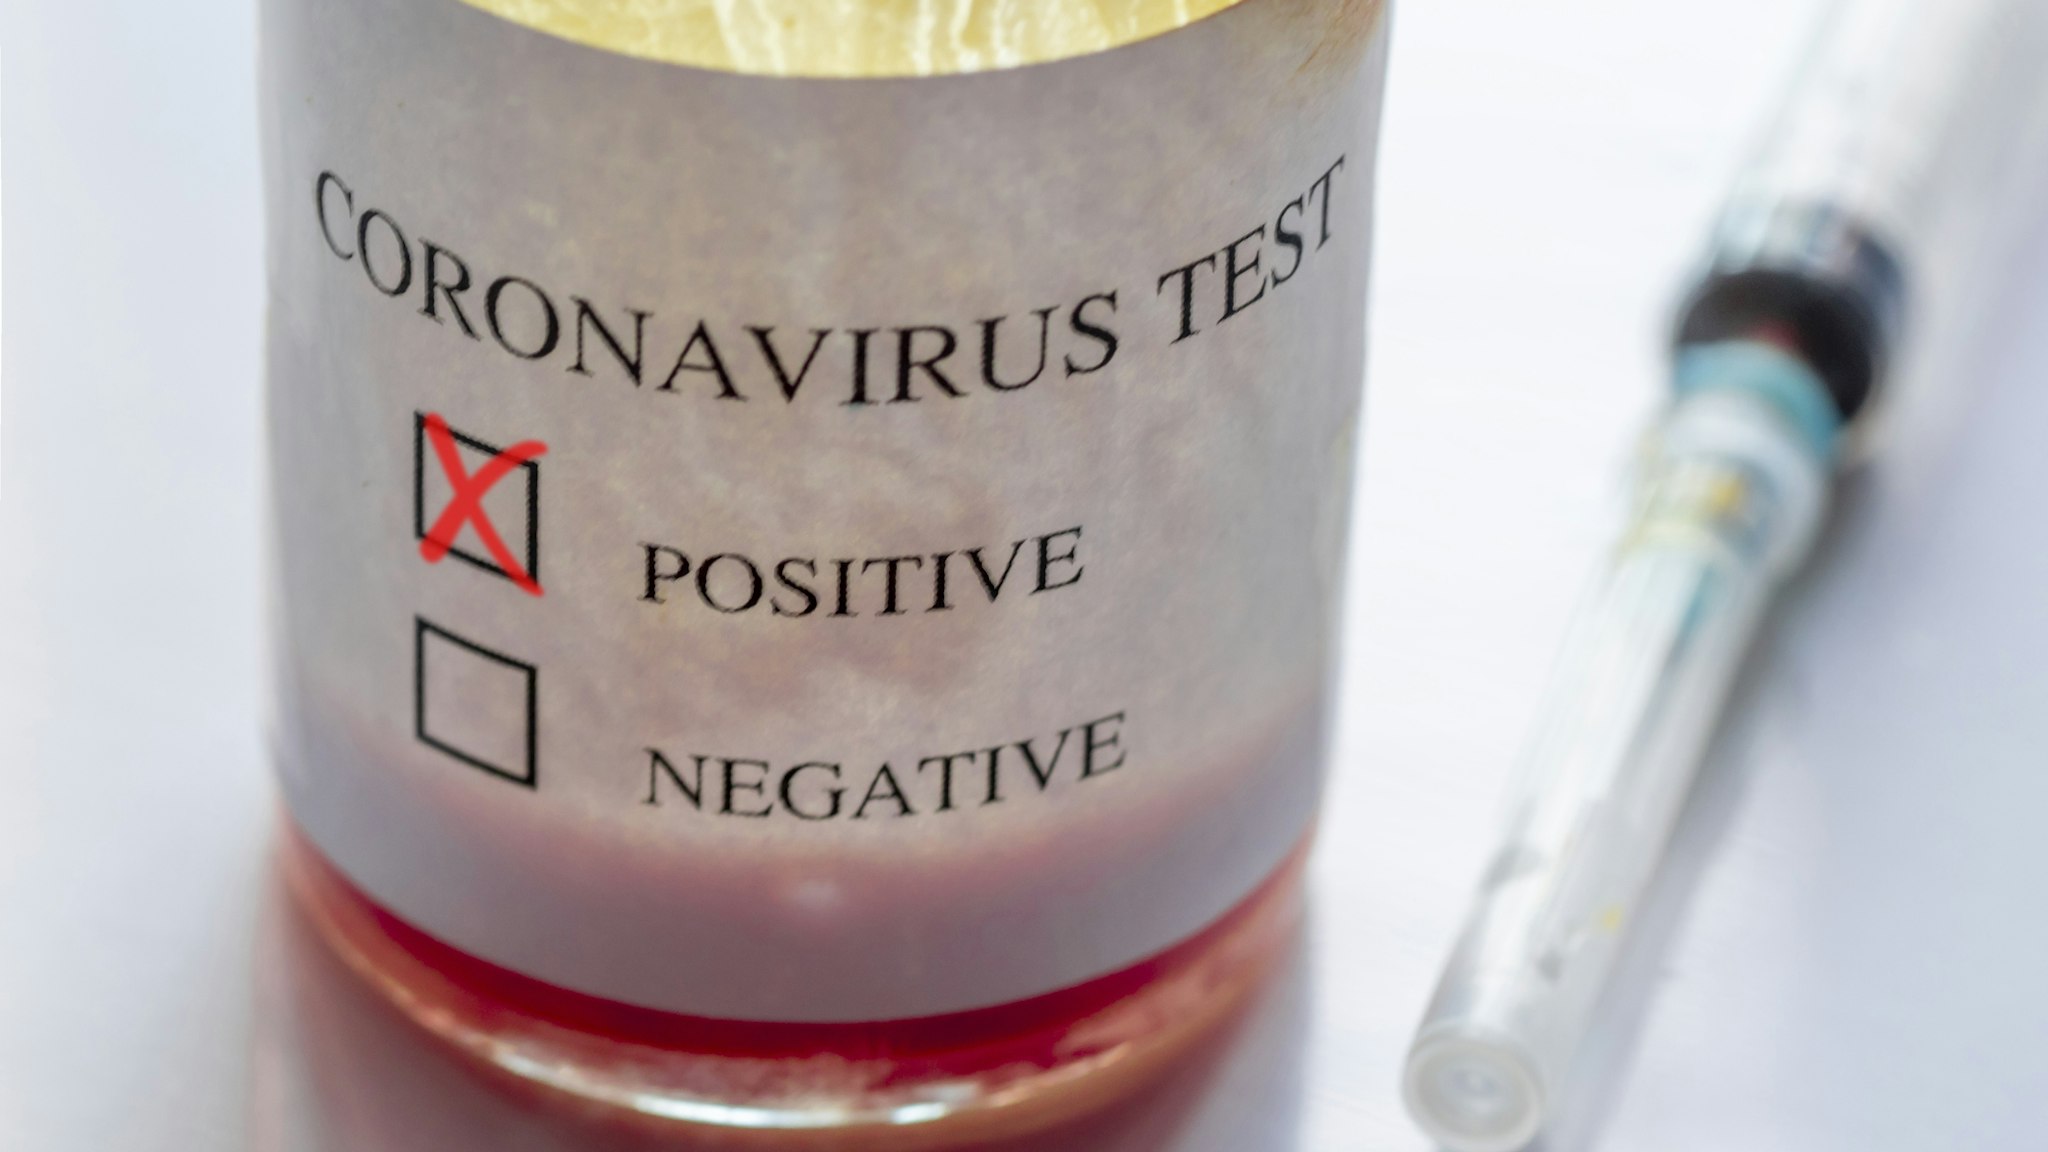 Coronavirus Positive Blood Test And Syringe - stock photo